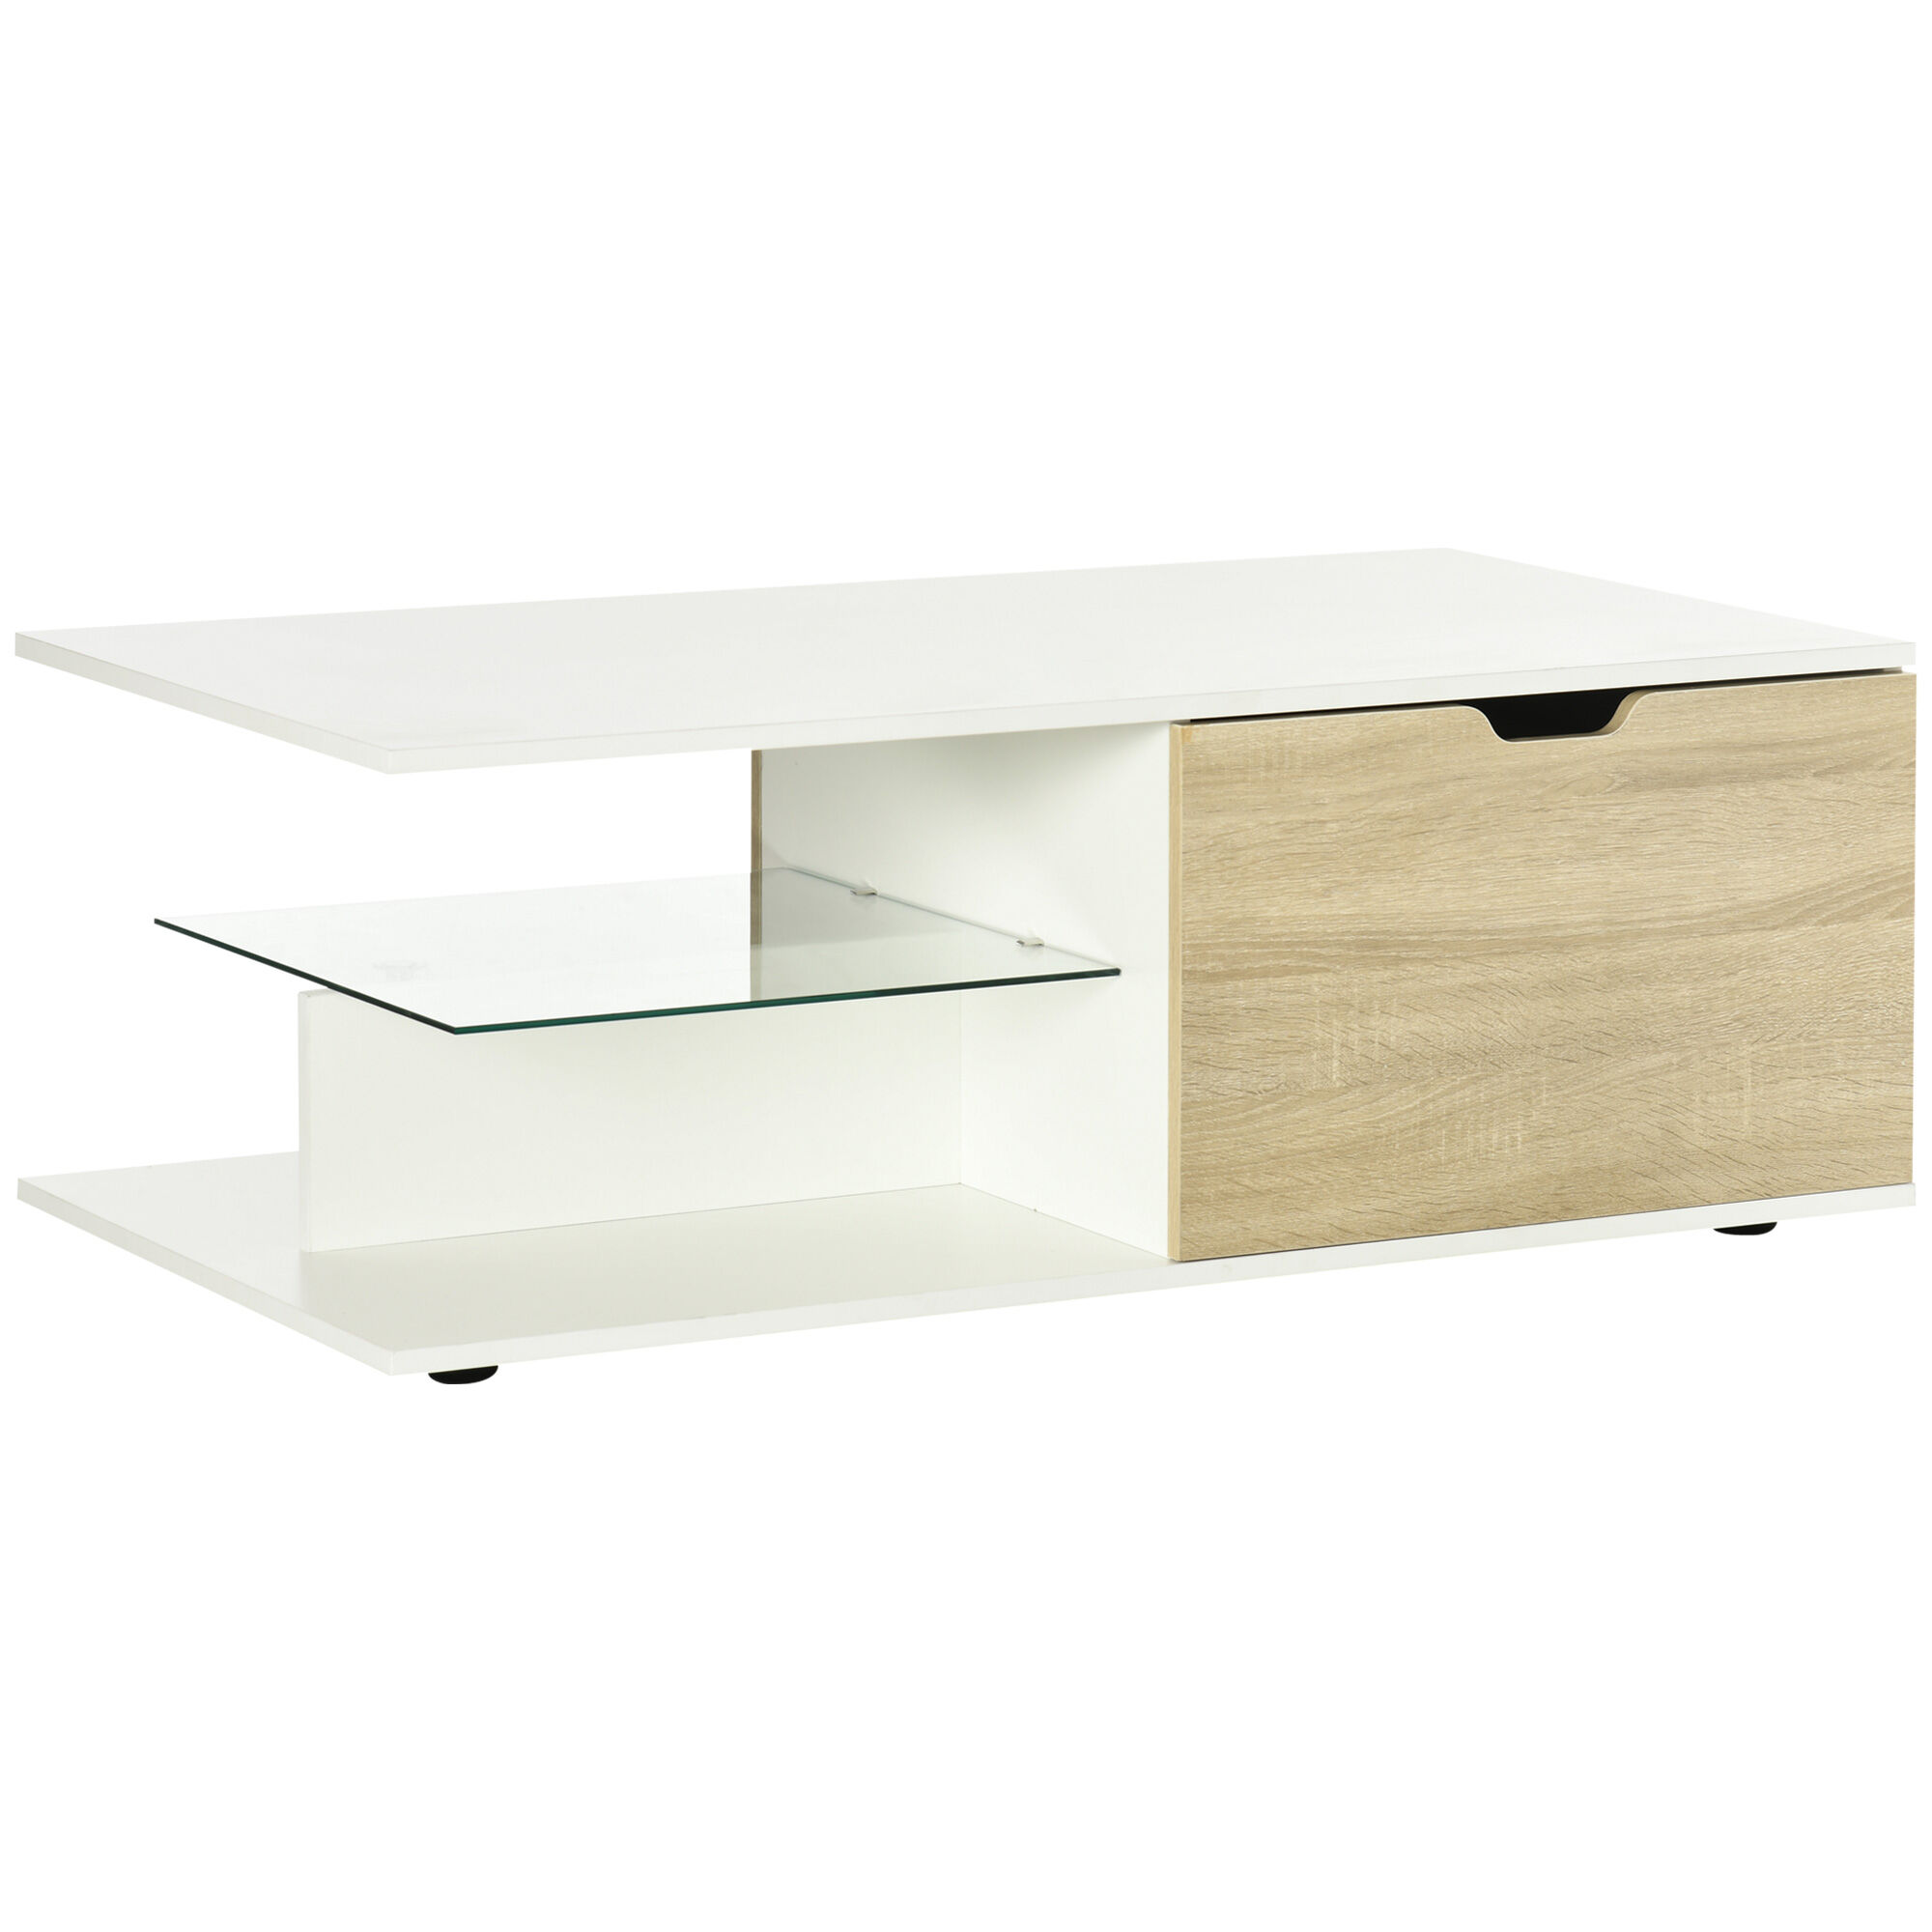 HOMCOM Table basse table de salon rectangulaire design moderne étagère en verre 2 tiroirs 106 x 58 x 39 cm blanc   Aosom France